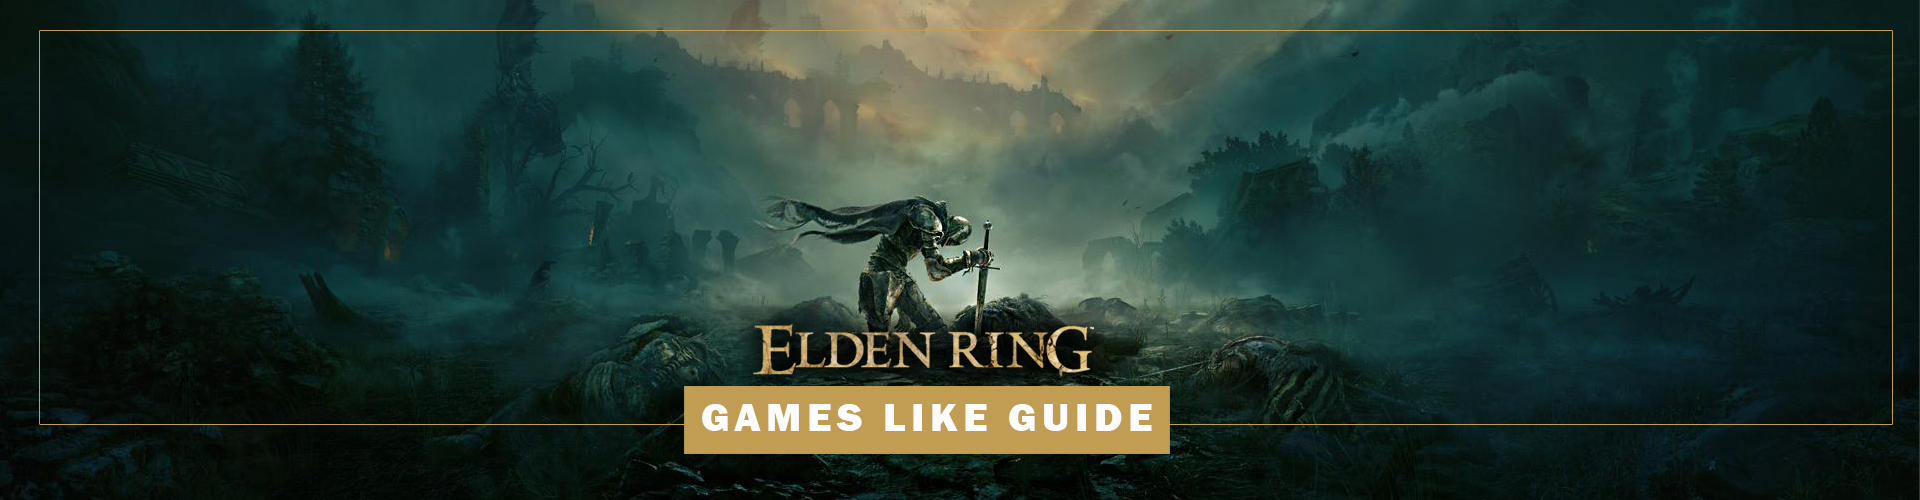 Los Juegos Como Elden Ring